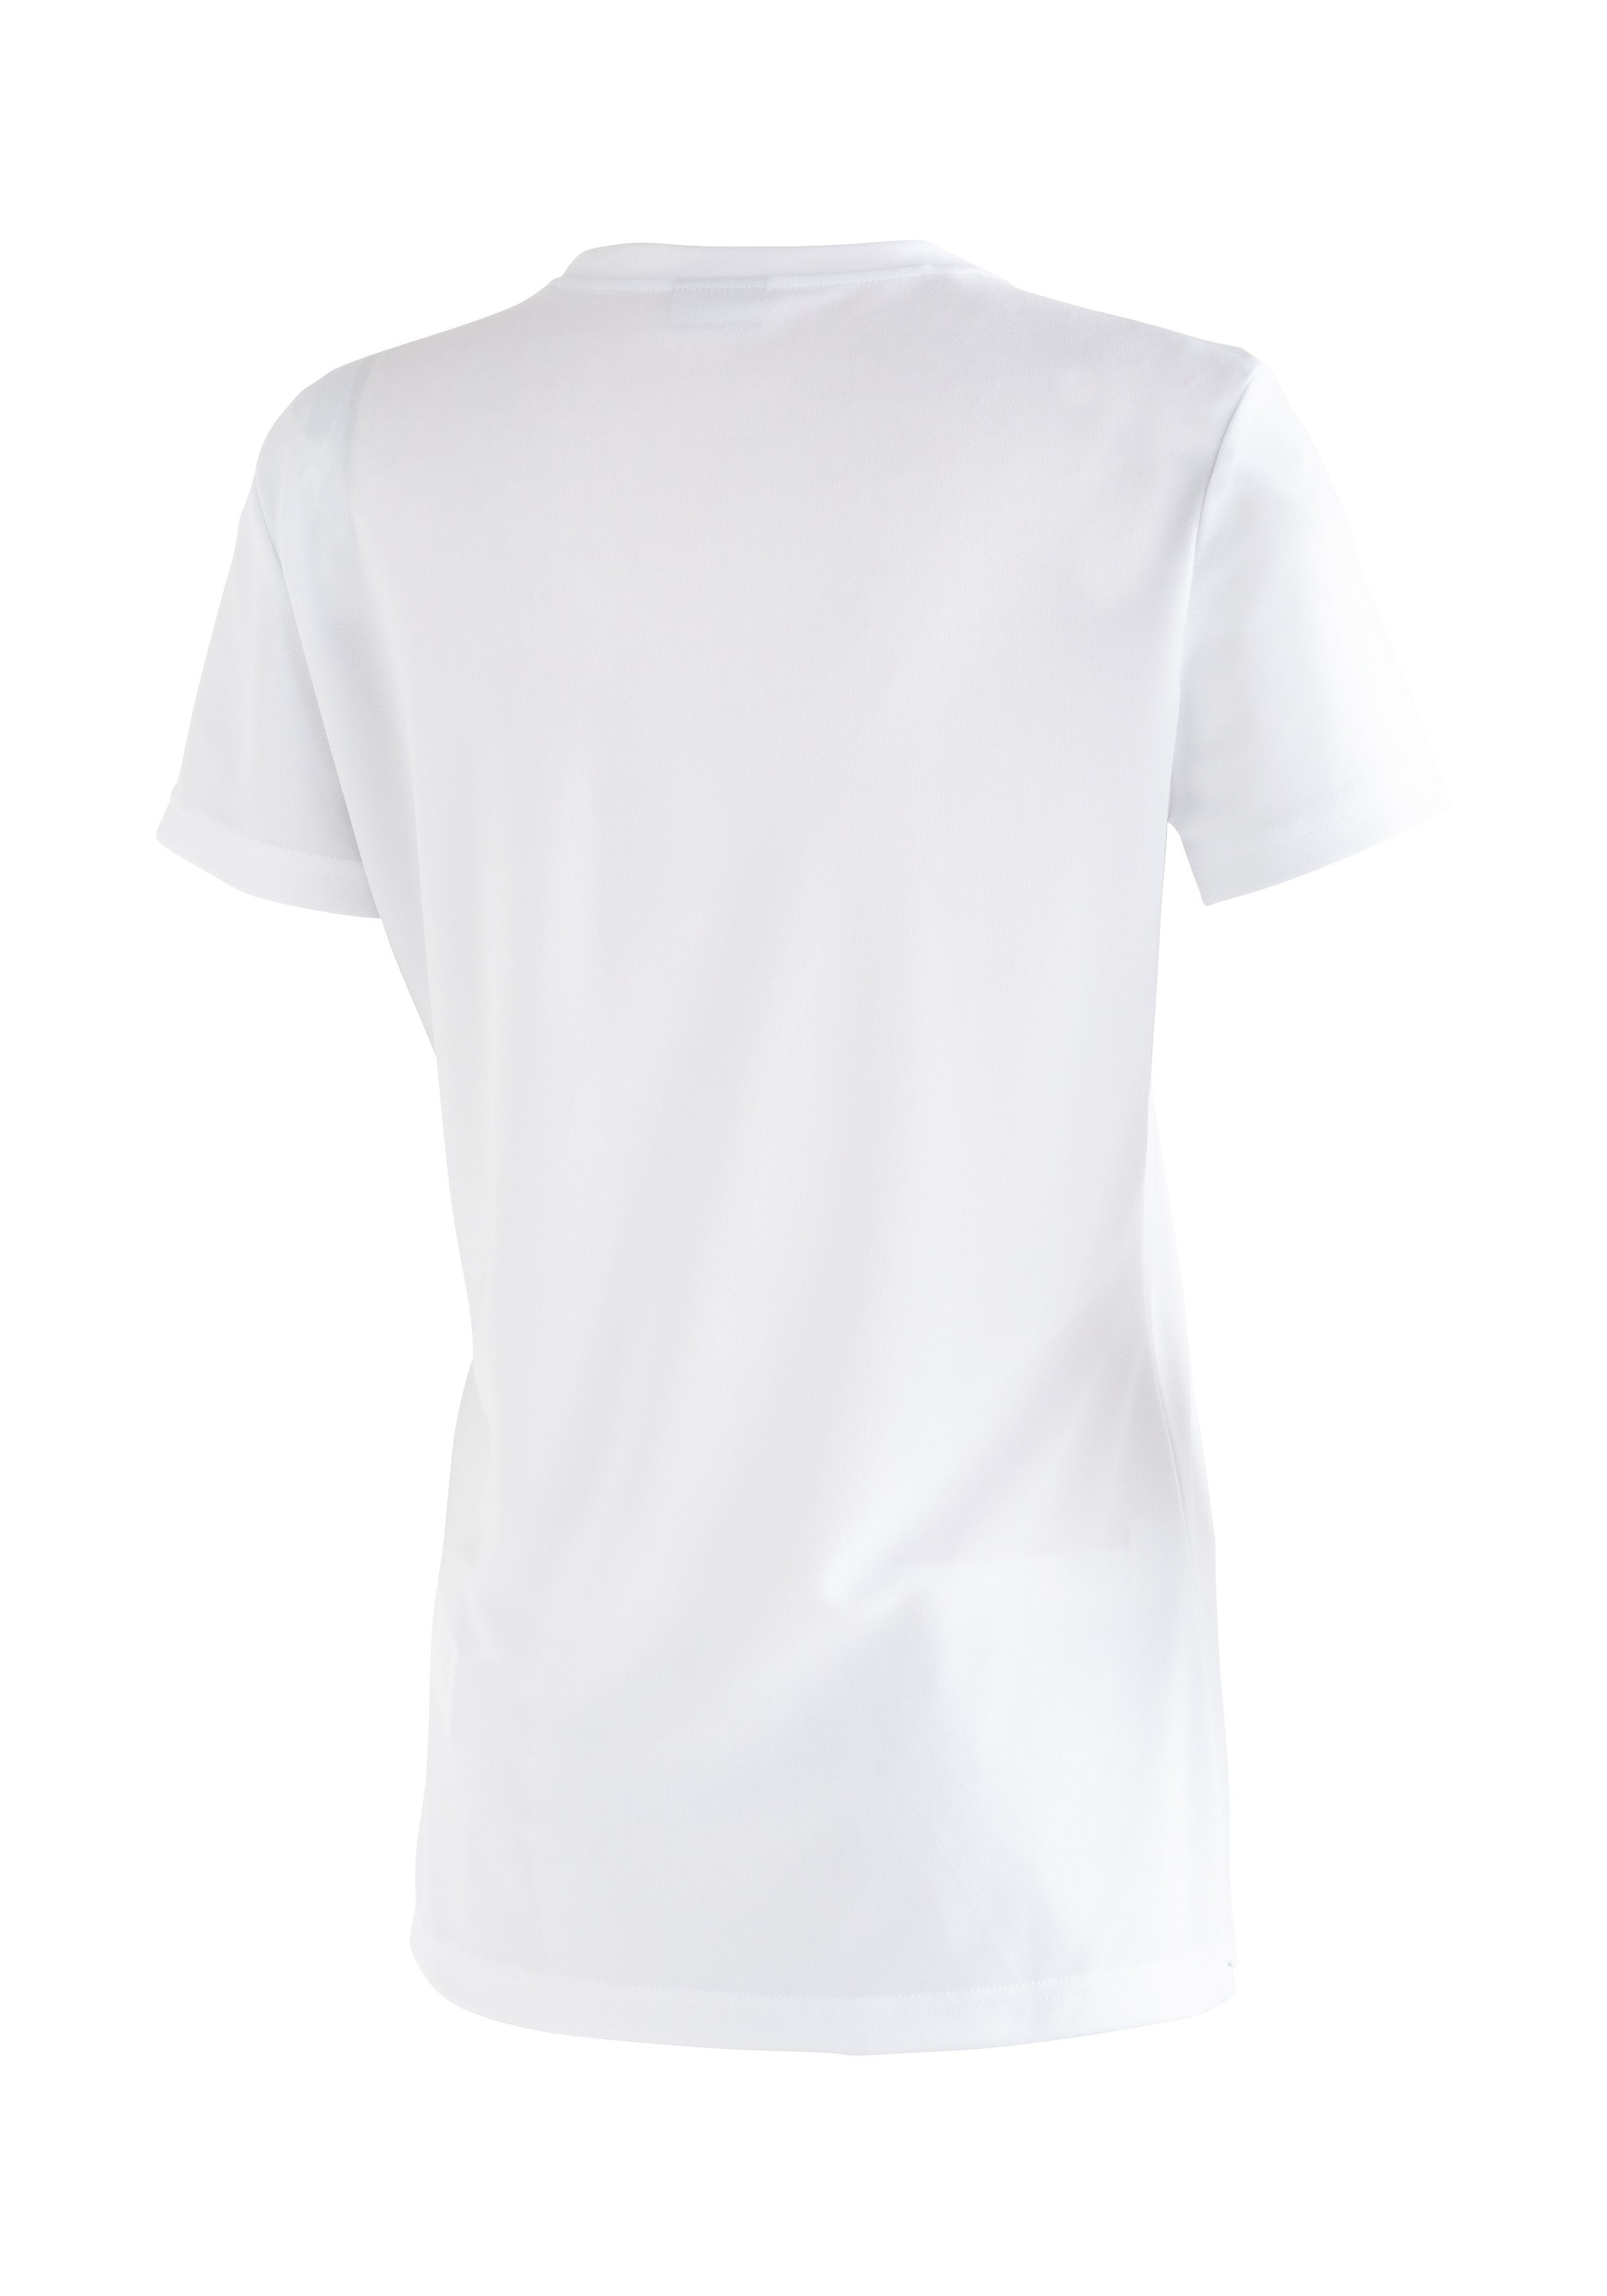 Maier Sports Funktionsshirt Waltraut Print Funktional vielseitiges T-Shirt  mit hoher Passformstabilität, Funktional vielseitiges T-Shirt für  Wanderungen und Freizeit